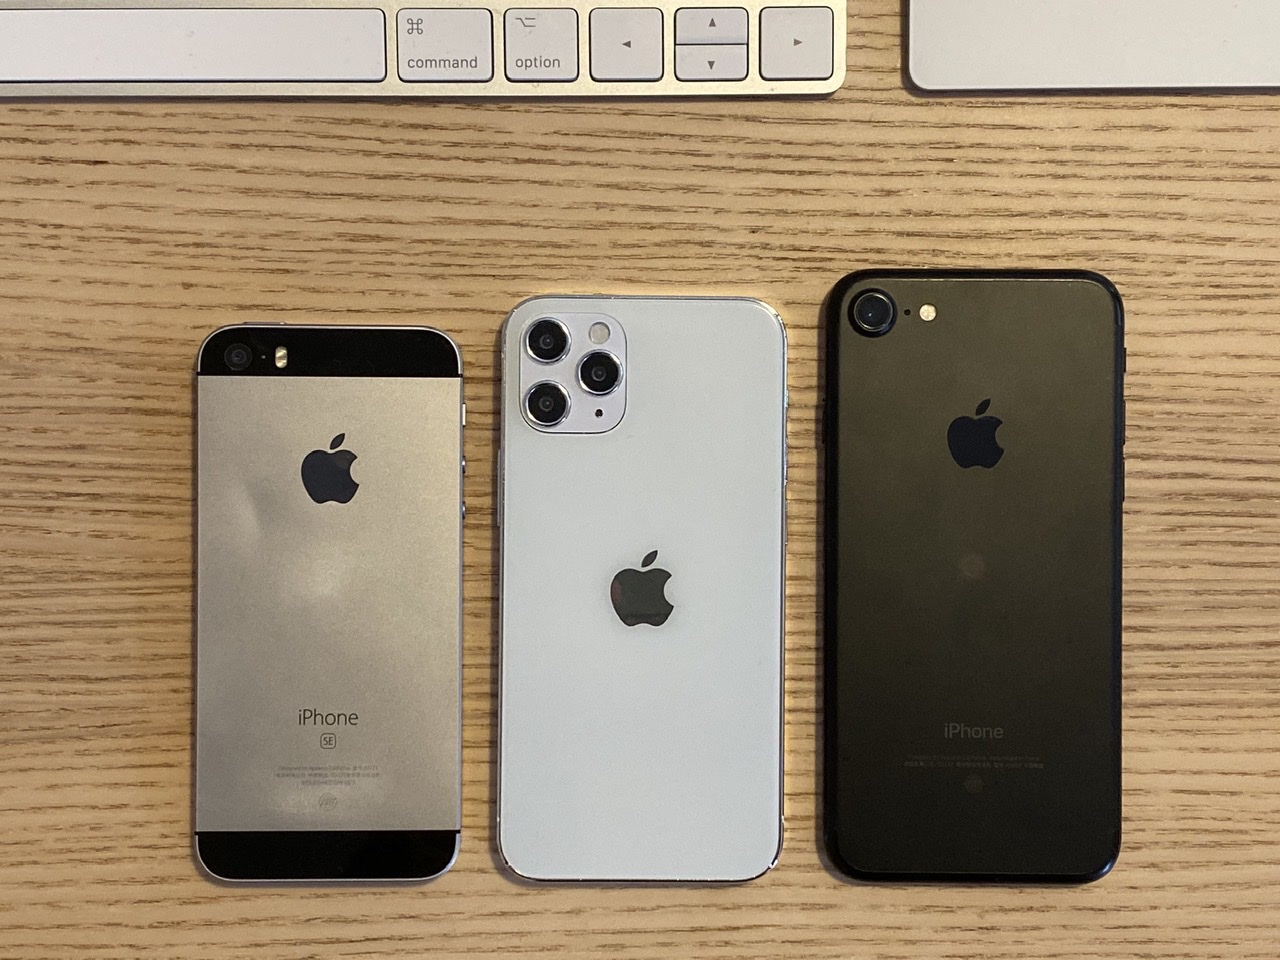 Original iPhone SE, iPhone 7, iPhone 12